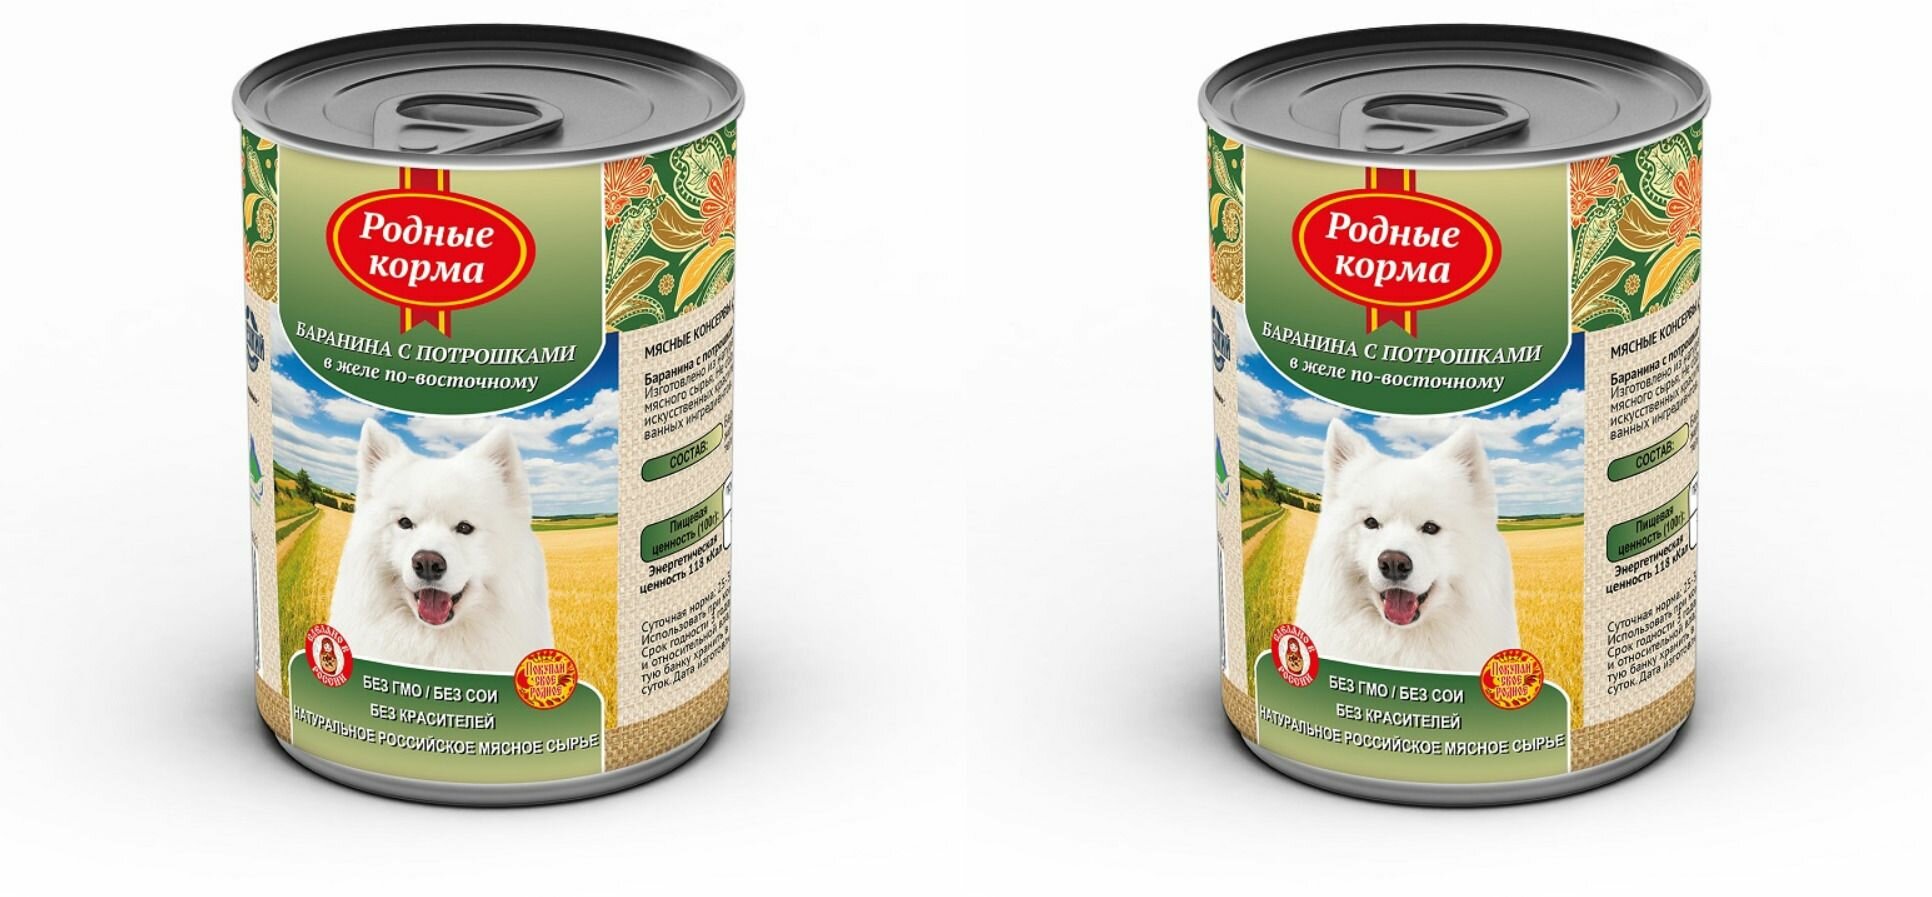 Родные корма консервы для собак баранина с потрошками в желе по-восточному, 410 г, 2 шт